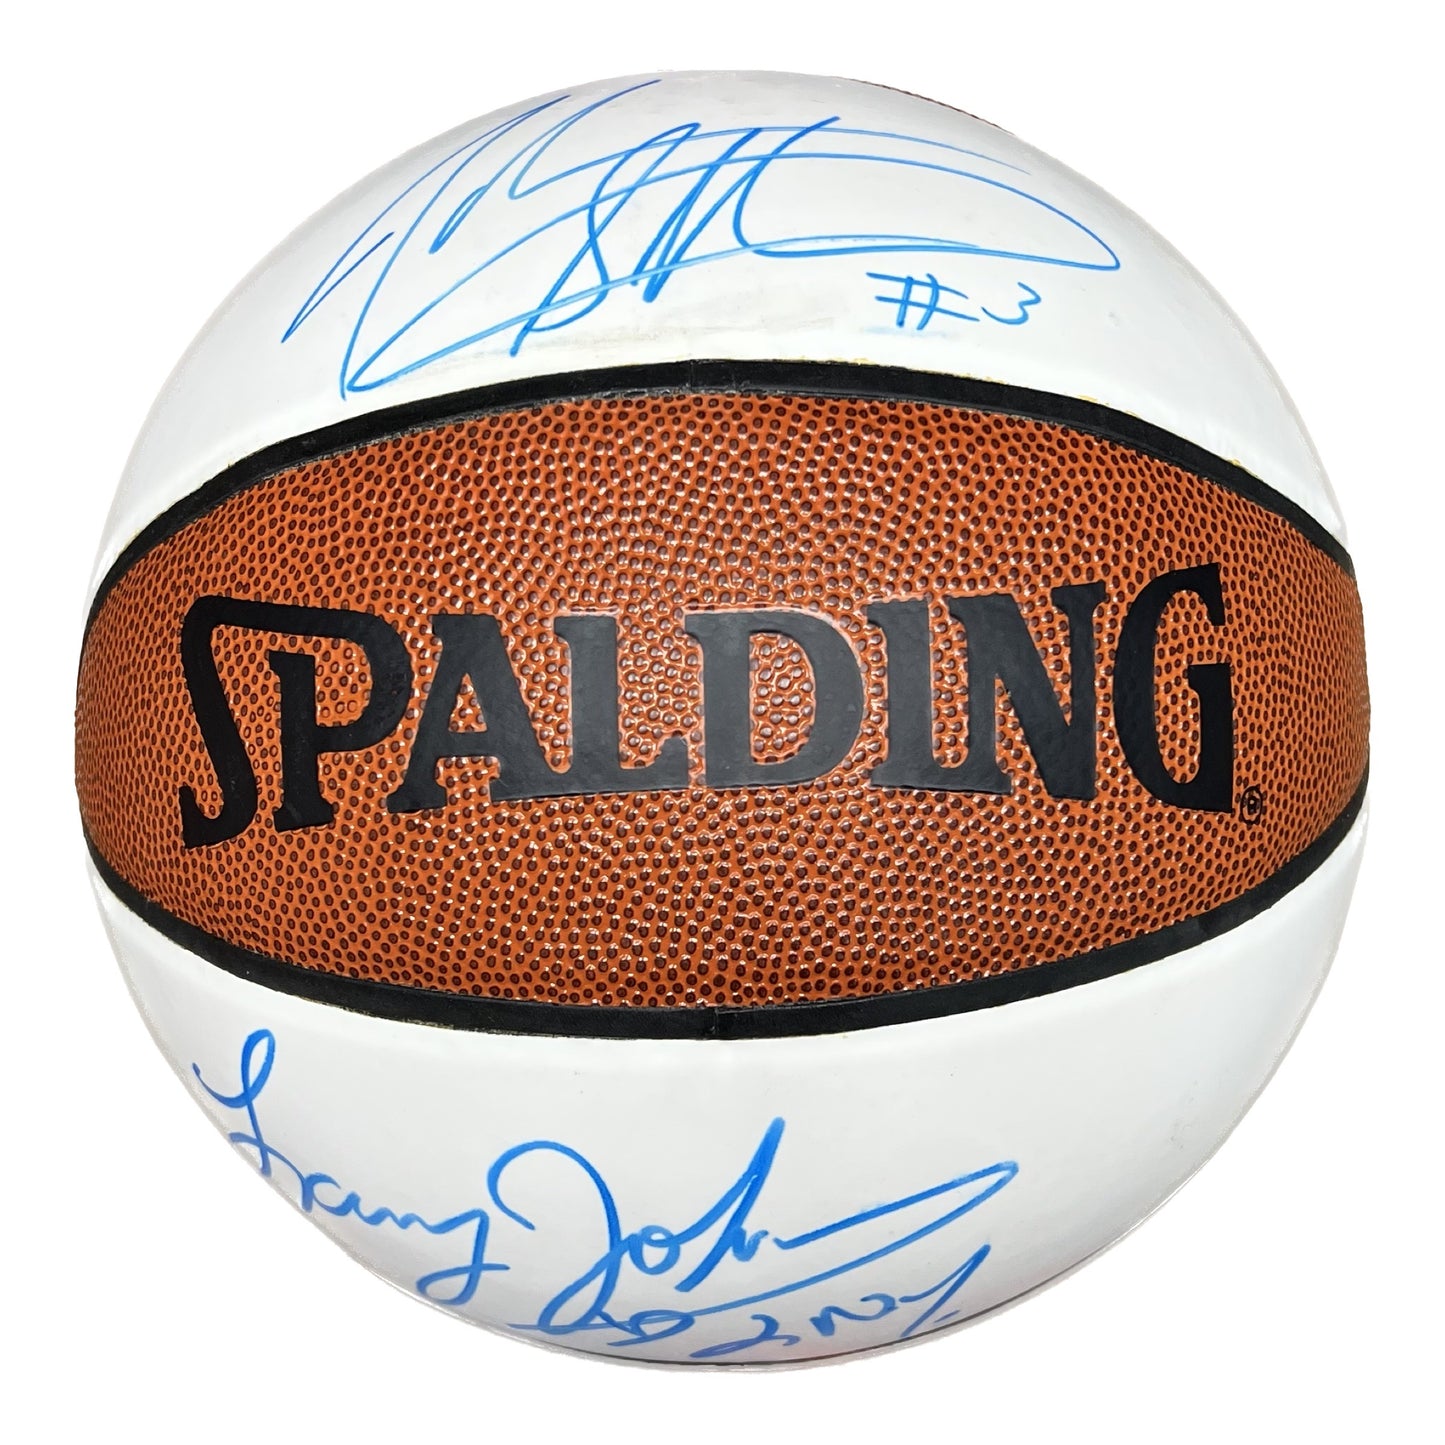 John Starks & Larry Johnson Autographed New York Knicks Spalding White Panel Basketball Beckett